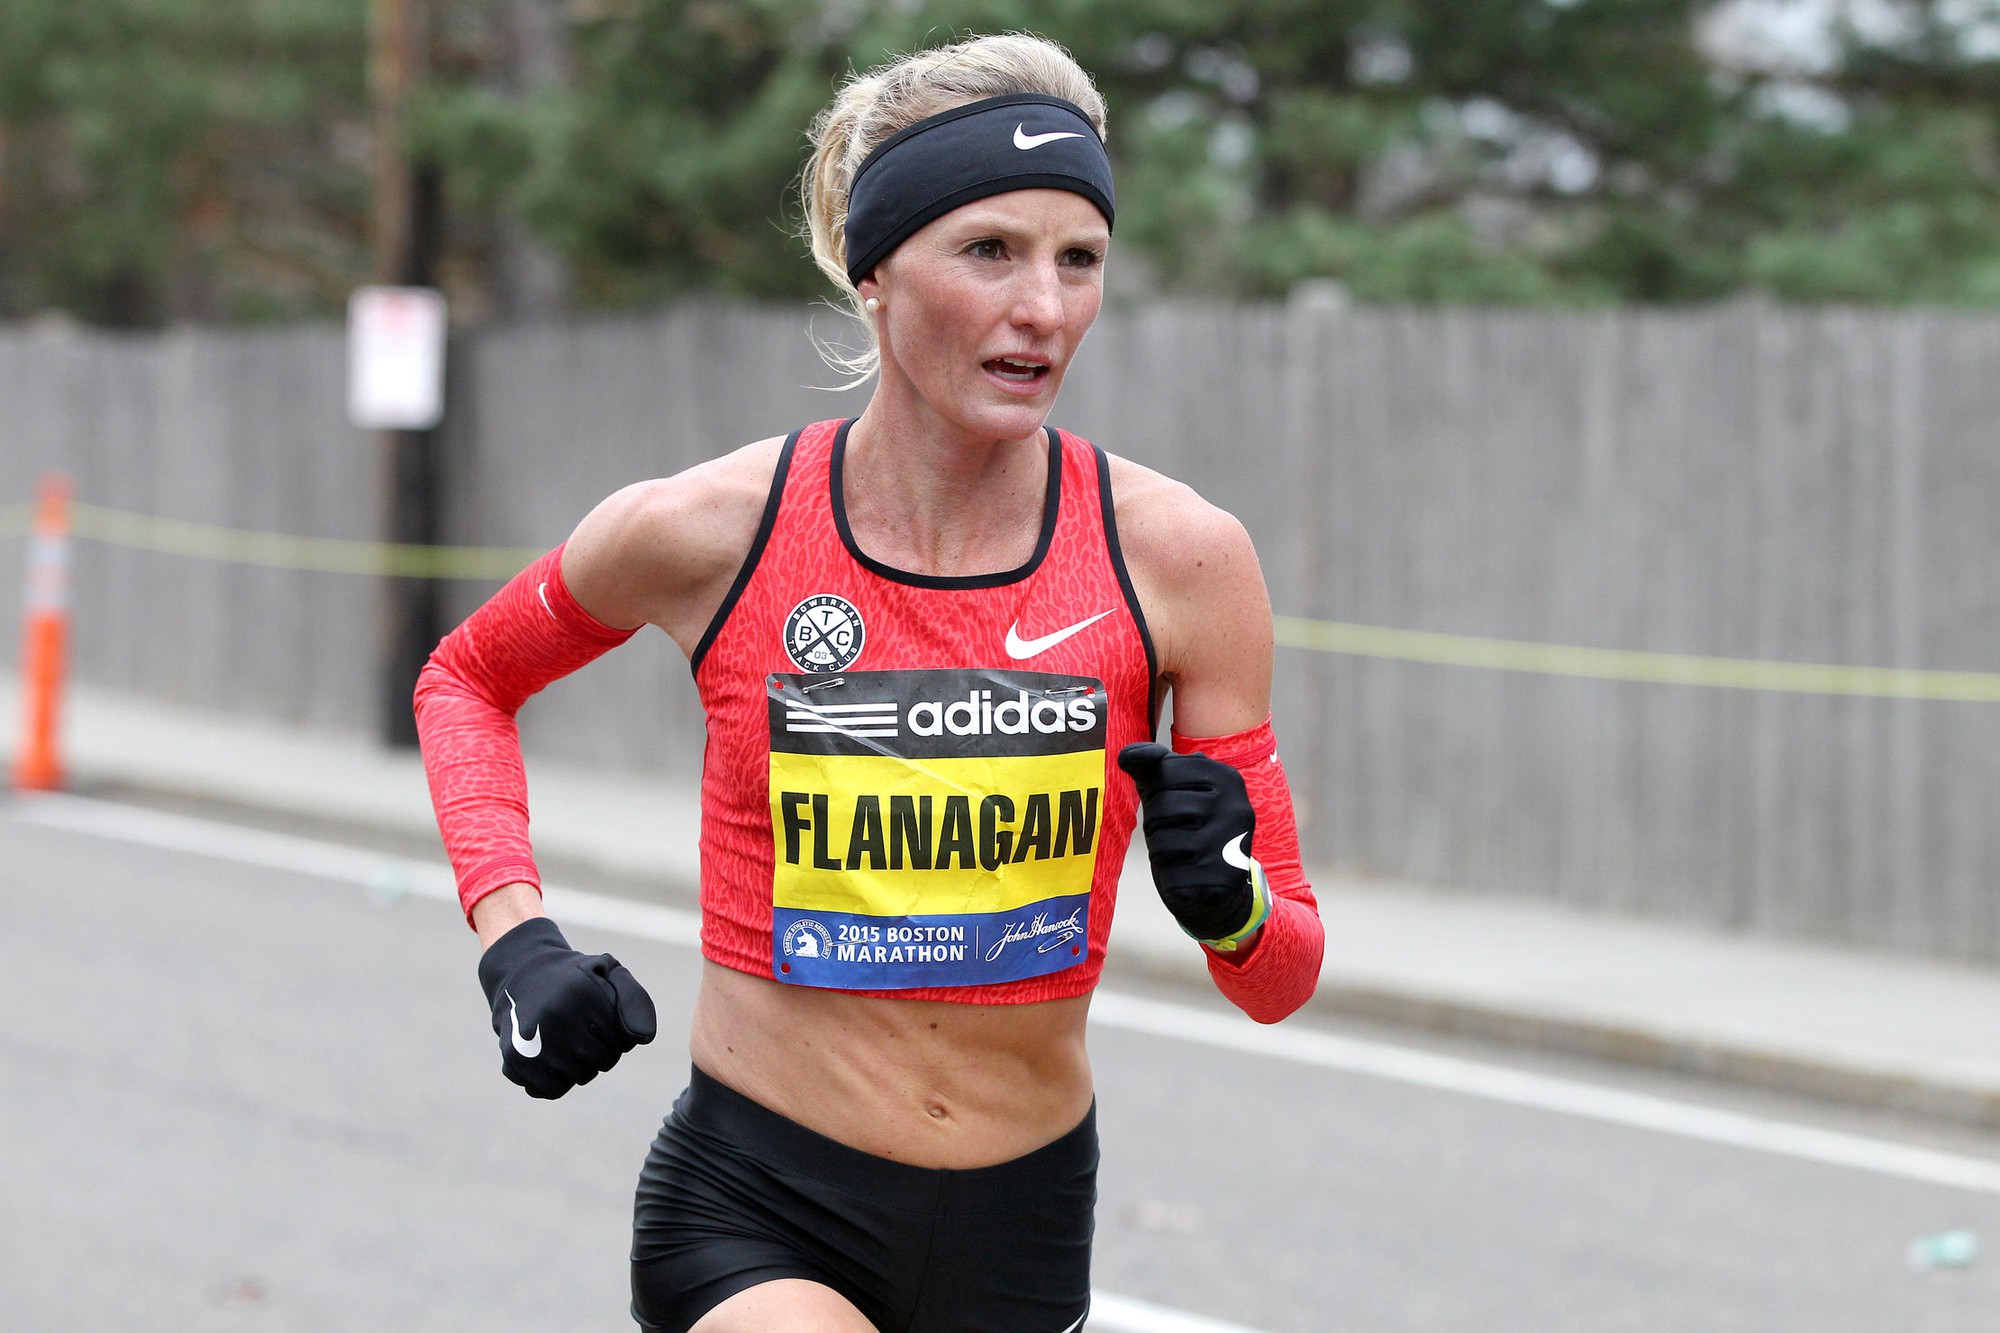 VĐV hàng đầu Mỹ, Shalane Flanagan, bày tỏ sự nản chí với vấn nạn doping trong môn marathon